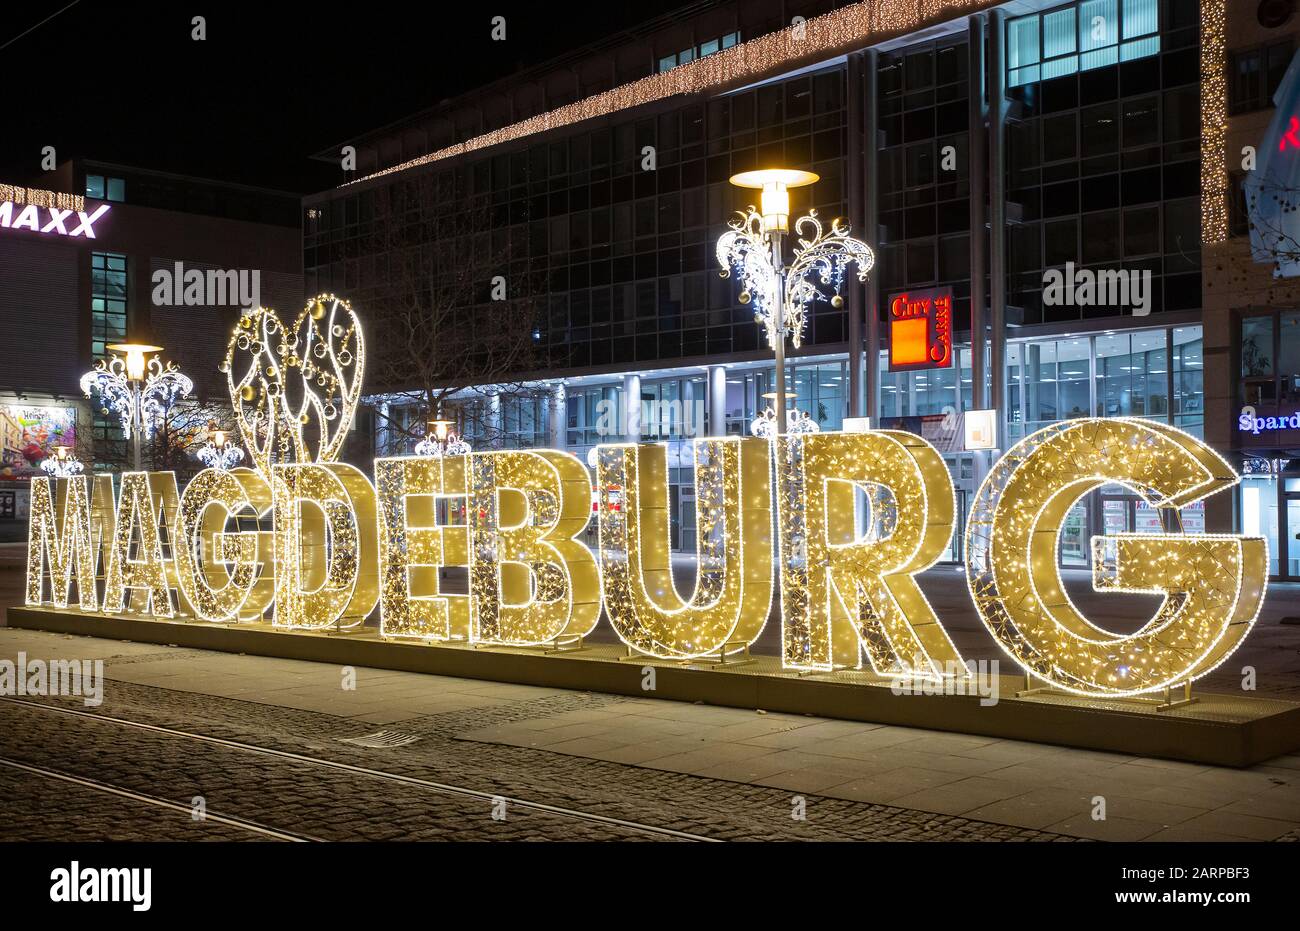 Pour la première fois cet hiver, Magdeburg est transformé en un monde lumineux. Des millions de lumières scintillent dans les rues Banque D'Images